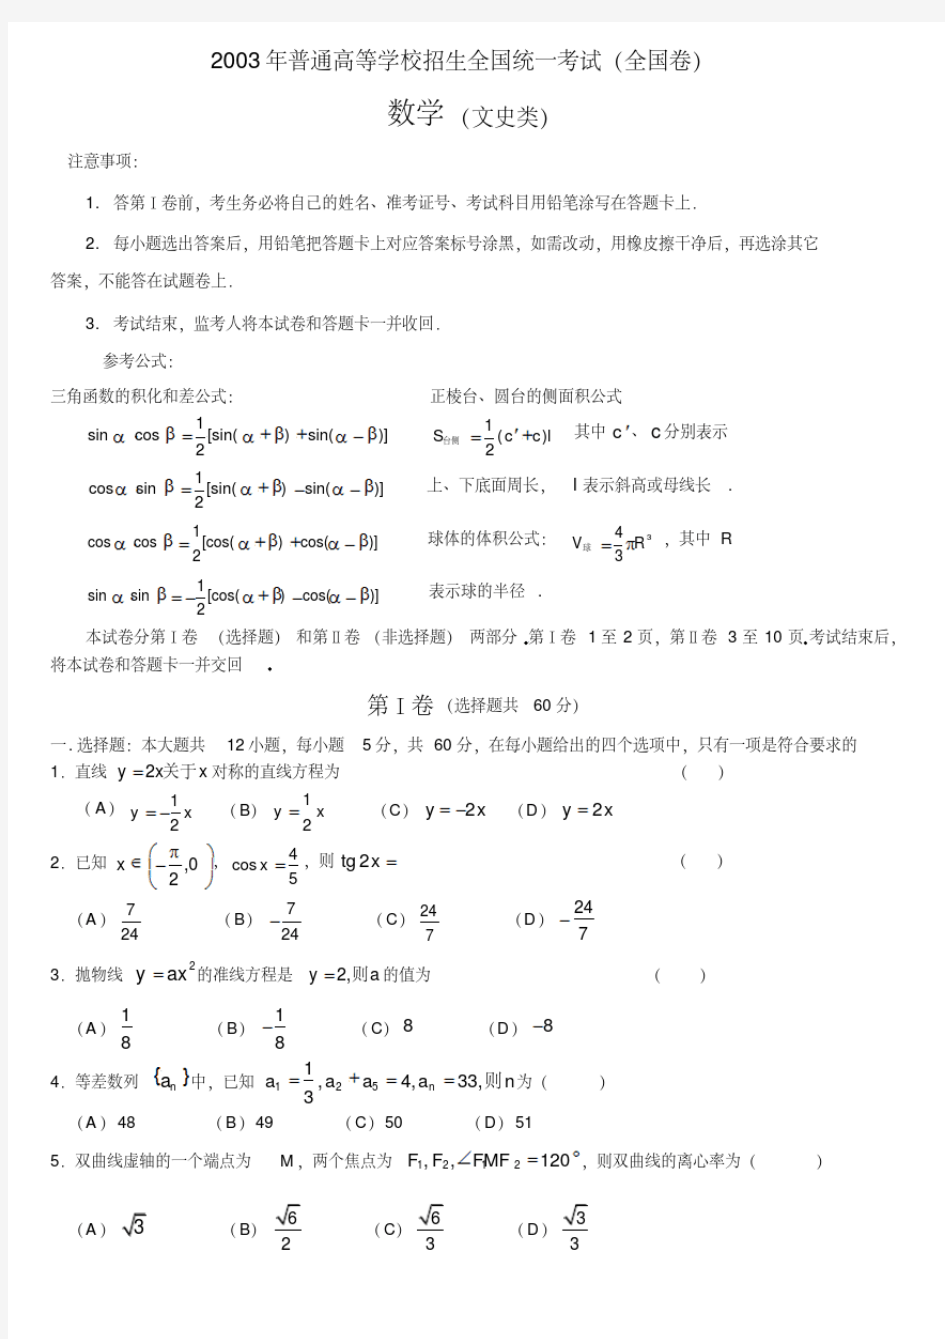 2003年高考数学试题全国文及答案-精选.pdf